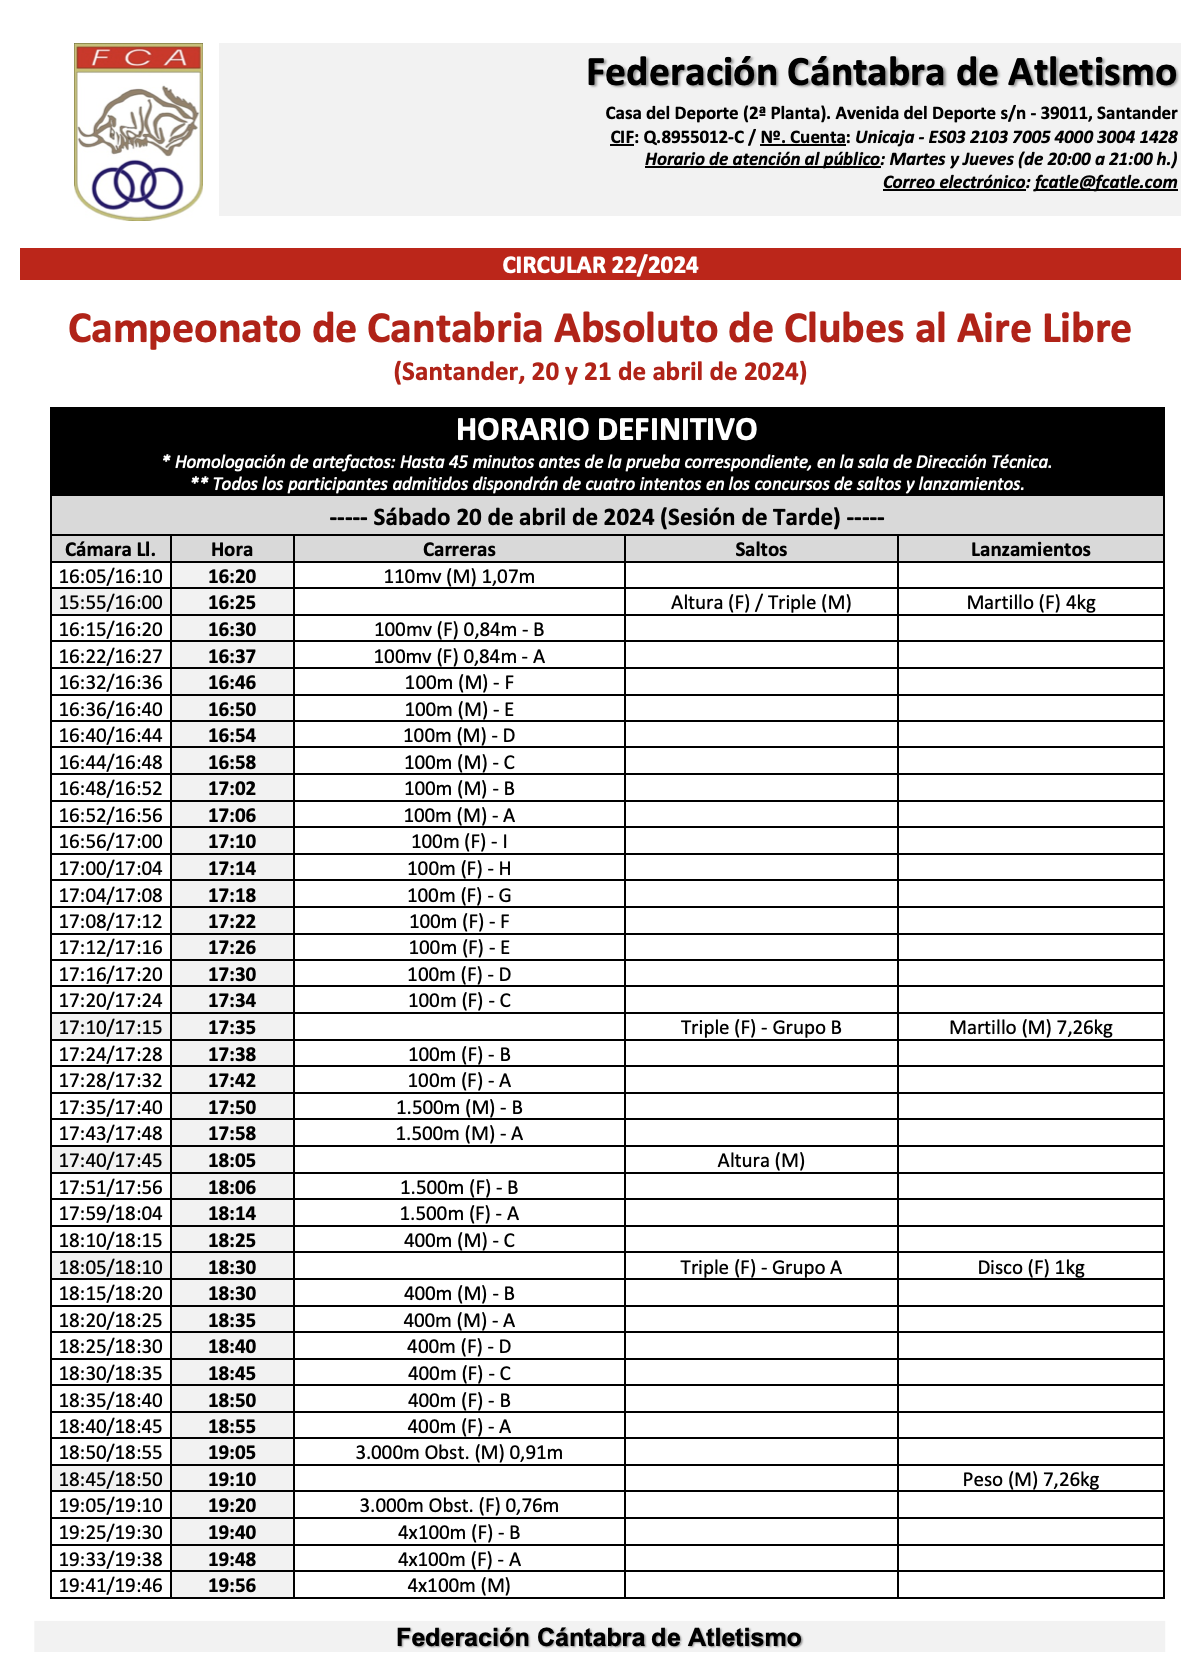 Campeonato de Cantabria Absoluto de Clubes al Aire Libre @ Santander, Cantabria